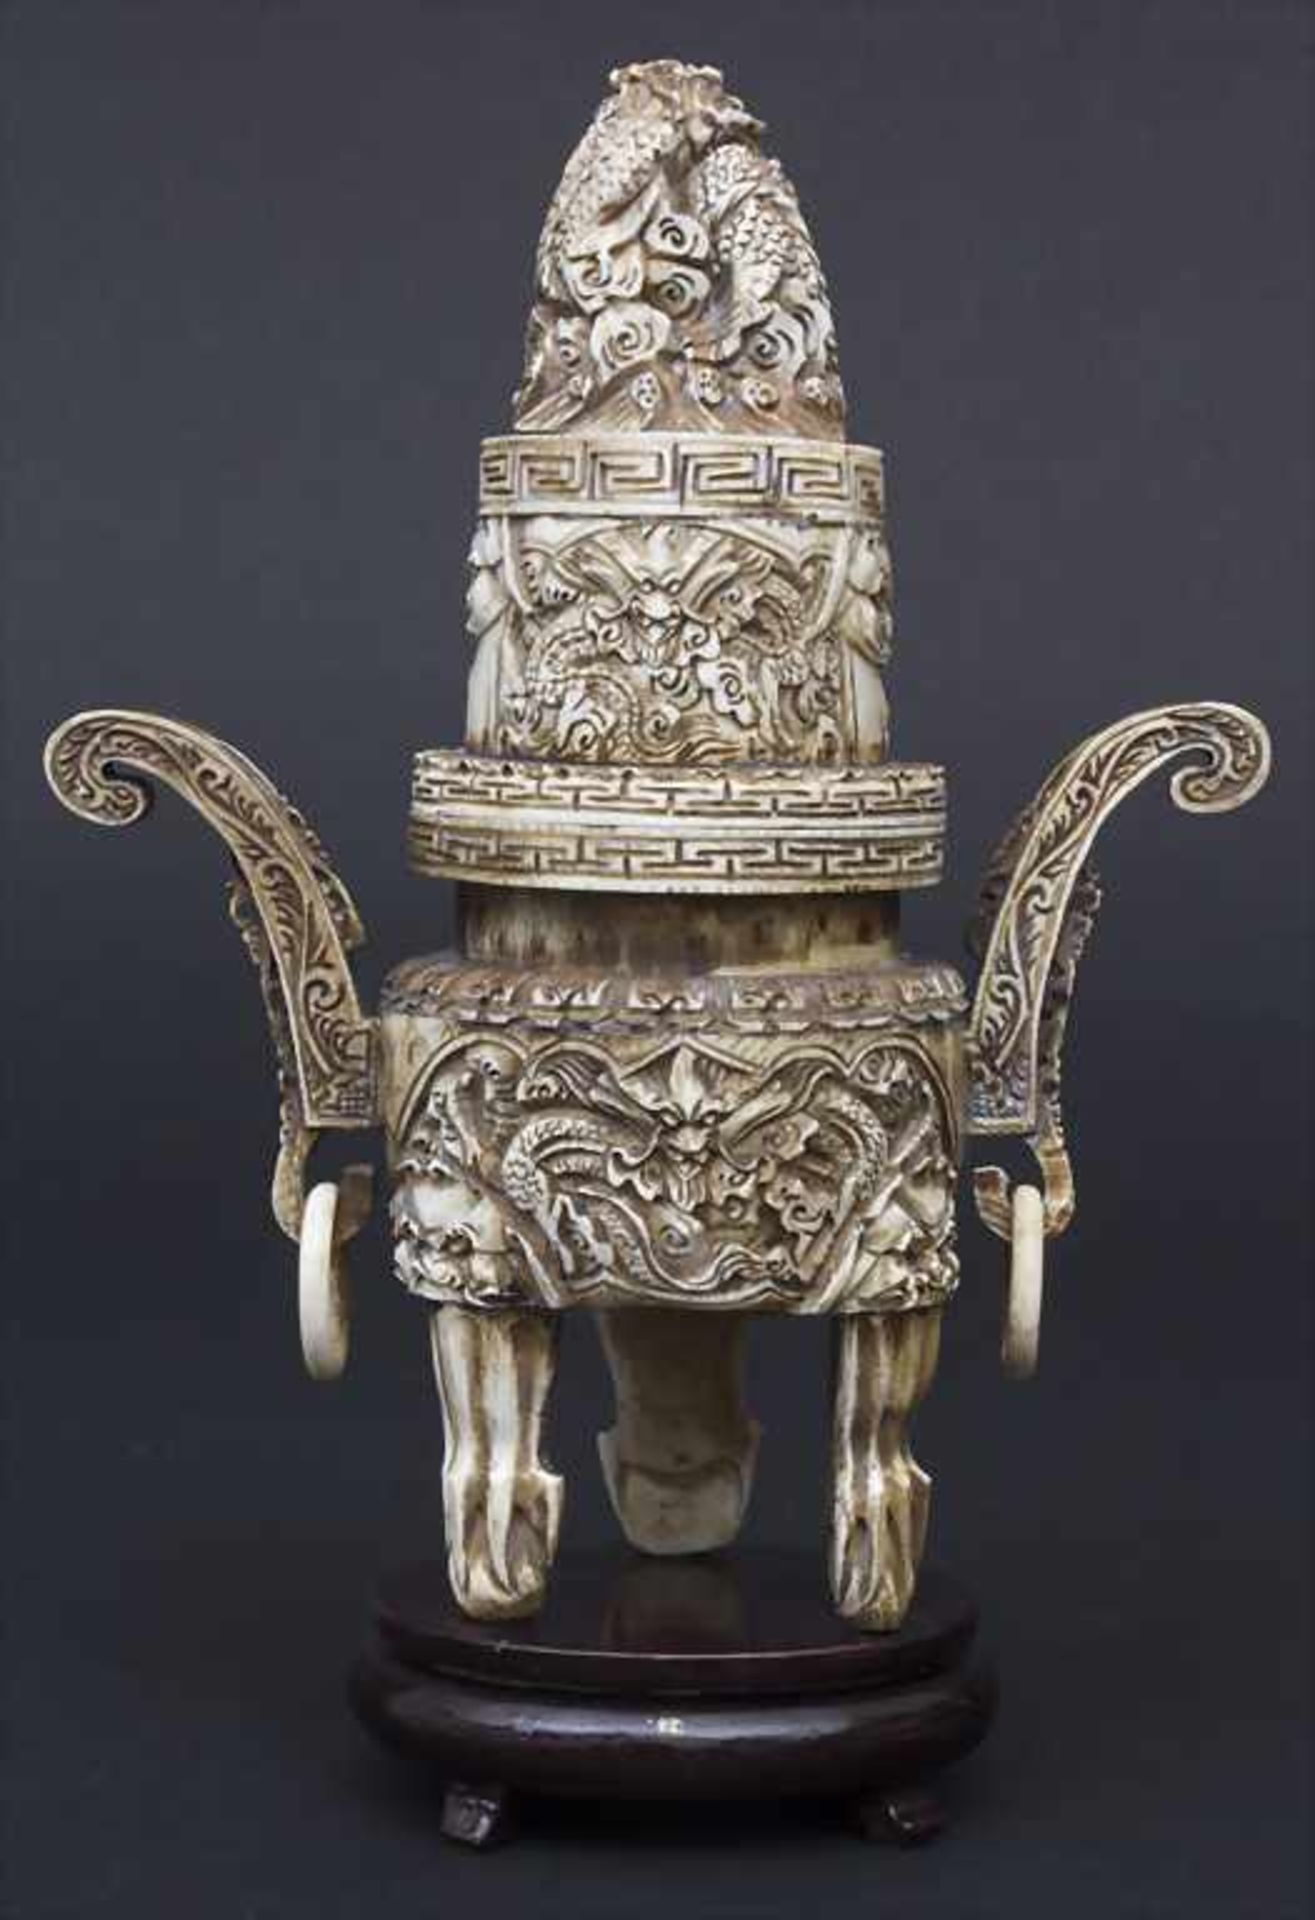 Räuchergefäß mit Drachendekor / An incense burner with dragons, China, um 1900Material: Elfenbein,